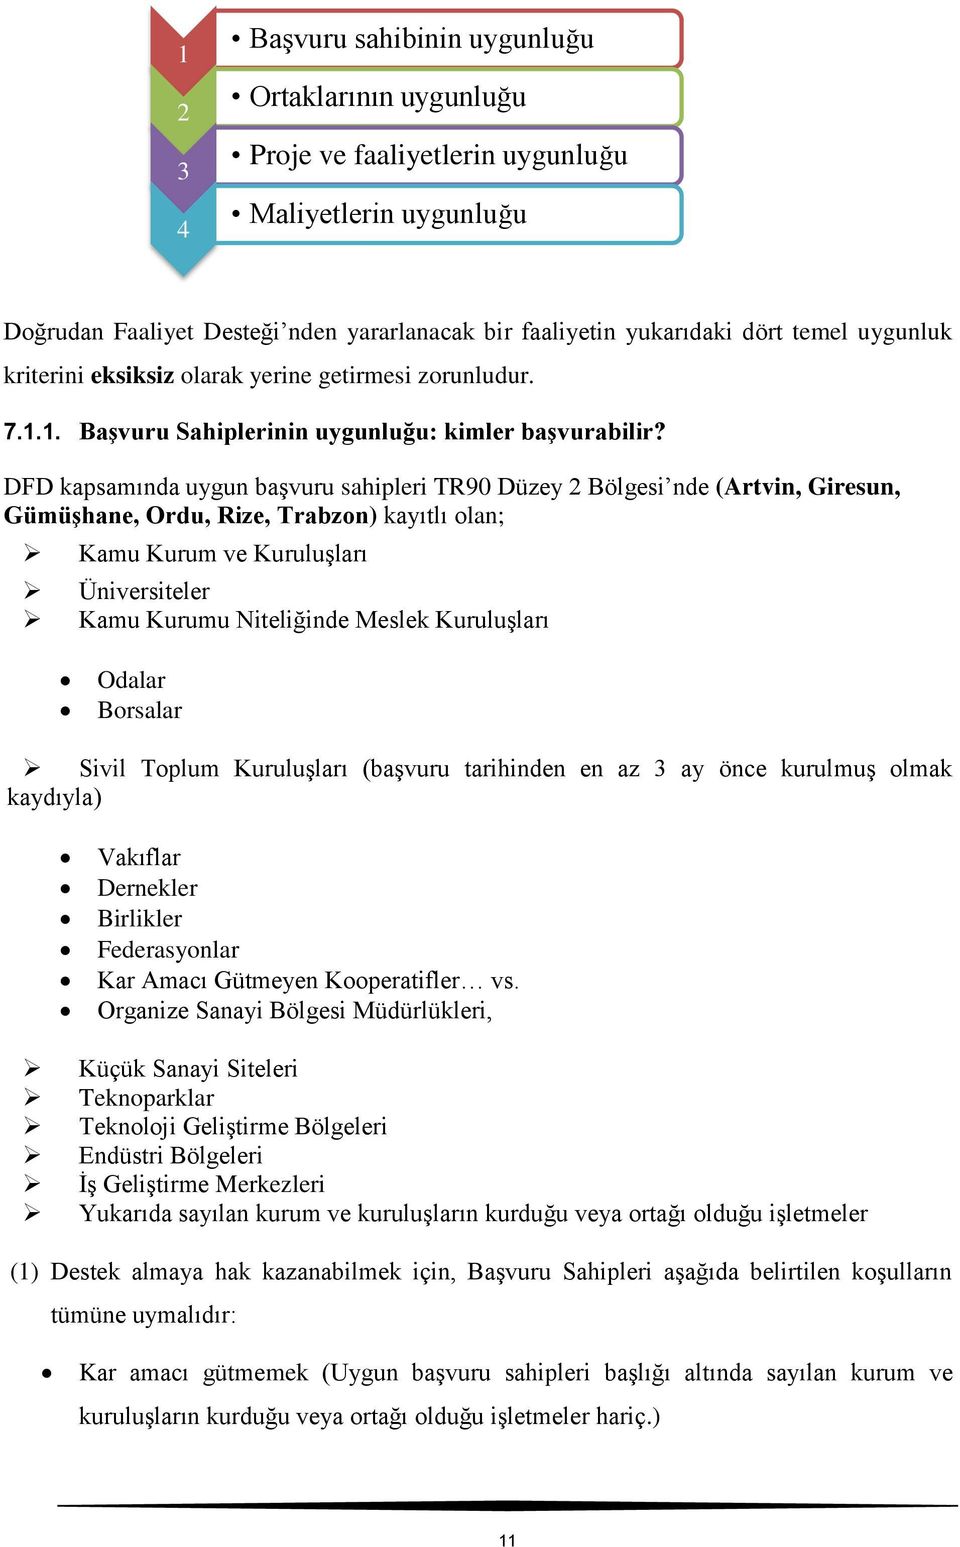 DFD kapsamında uygun başvuru sahipleri TR90 Düzey 2 Bölgesi nde (Artvin, Giresun, Gümüşhane, Ordu, Rize, Trabzon) kayıtlı olan; Kamu Kurum ve Kuruluşları Üniversiteler Kamu Kurumu Niteliğinde Meslek